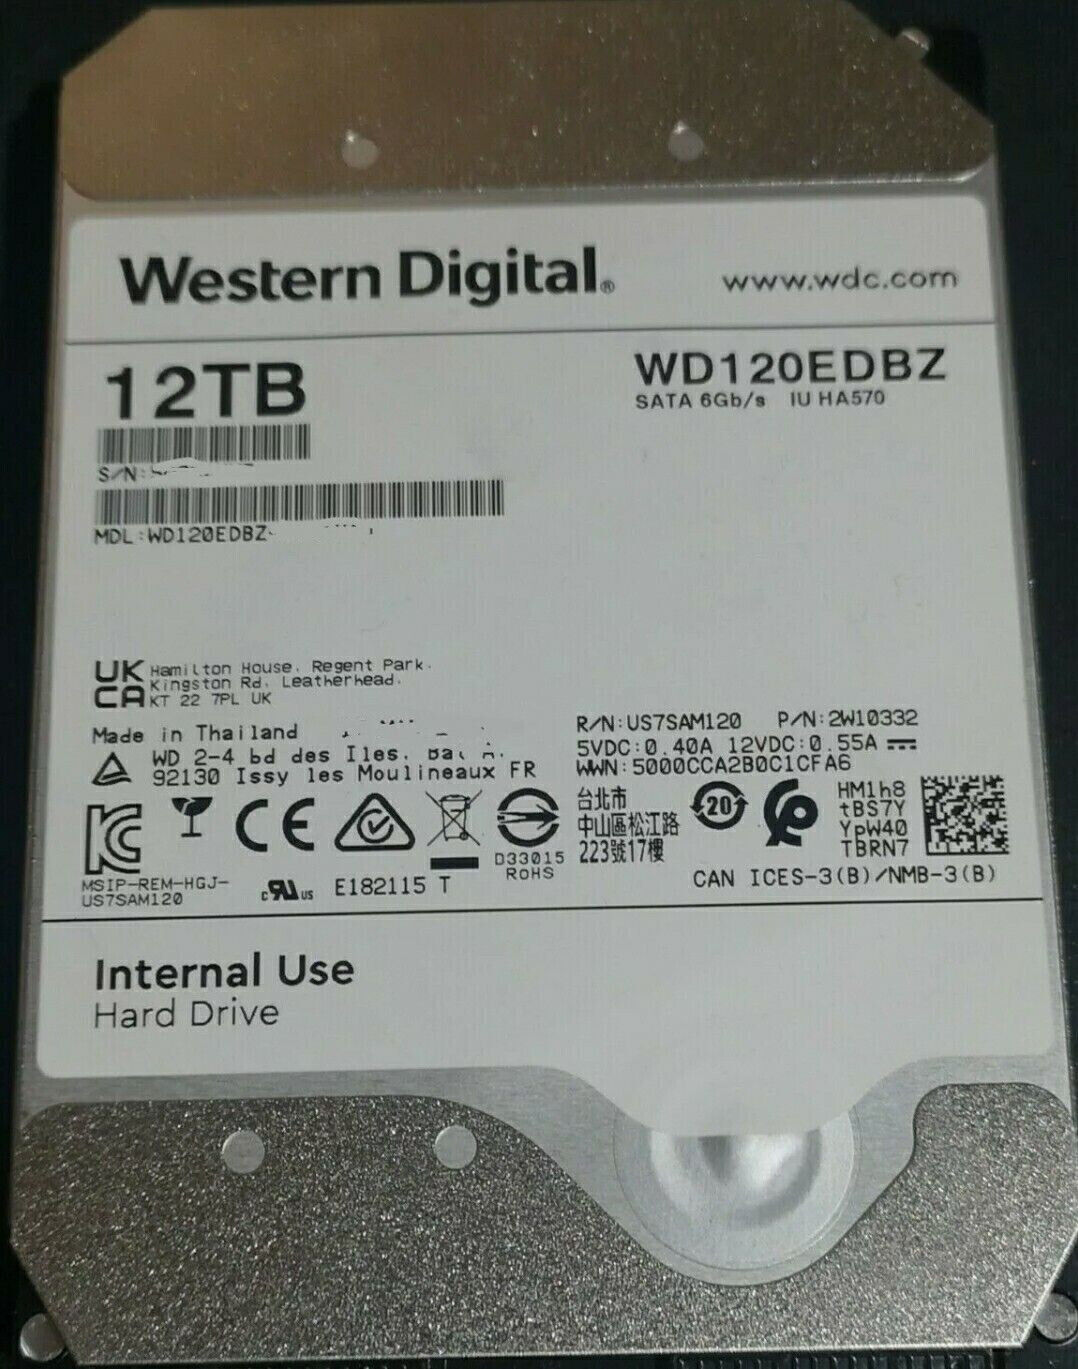 New Western Digital 12TB, 3.5 In, SATA III, Hard Drive, HDD, WD120EDBZ. OEM Pull